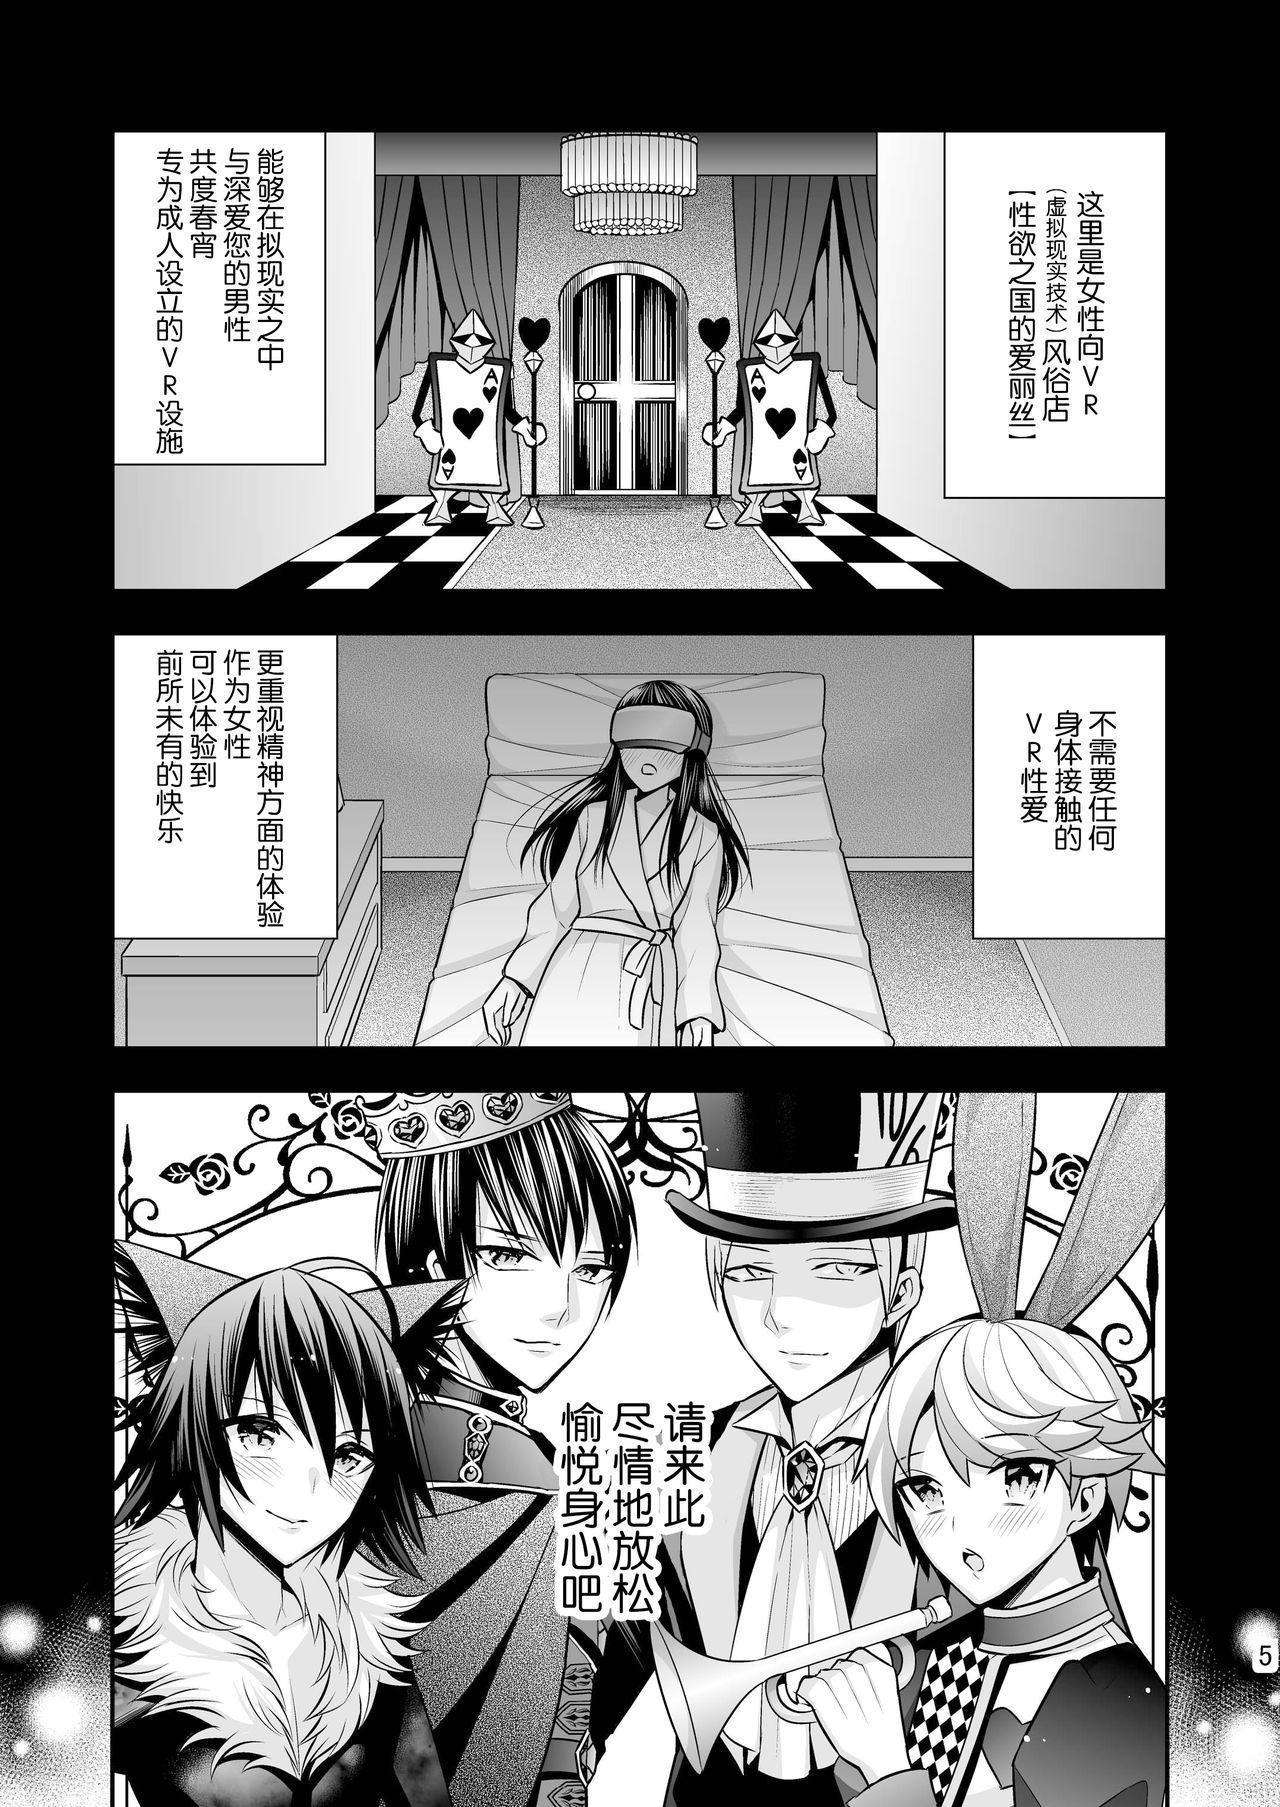 Chubby Josei Muke VR Fuuzoku "Libido no Kuni no Alice" Screaming - Page 5